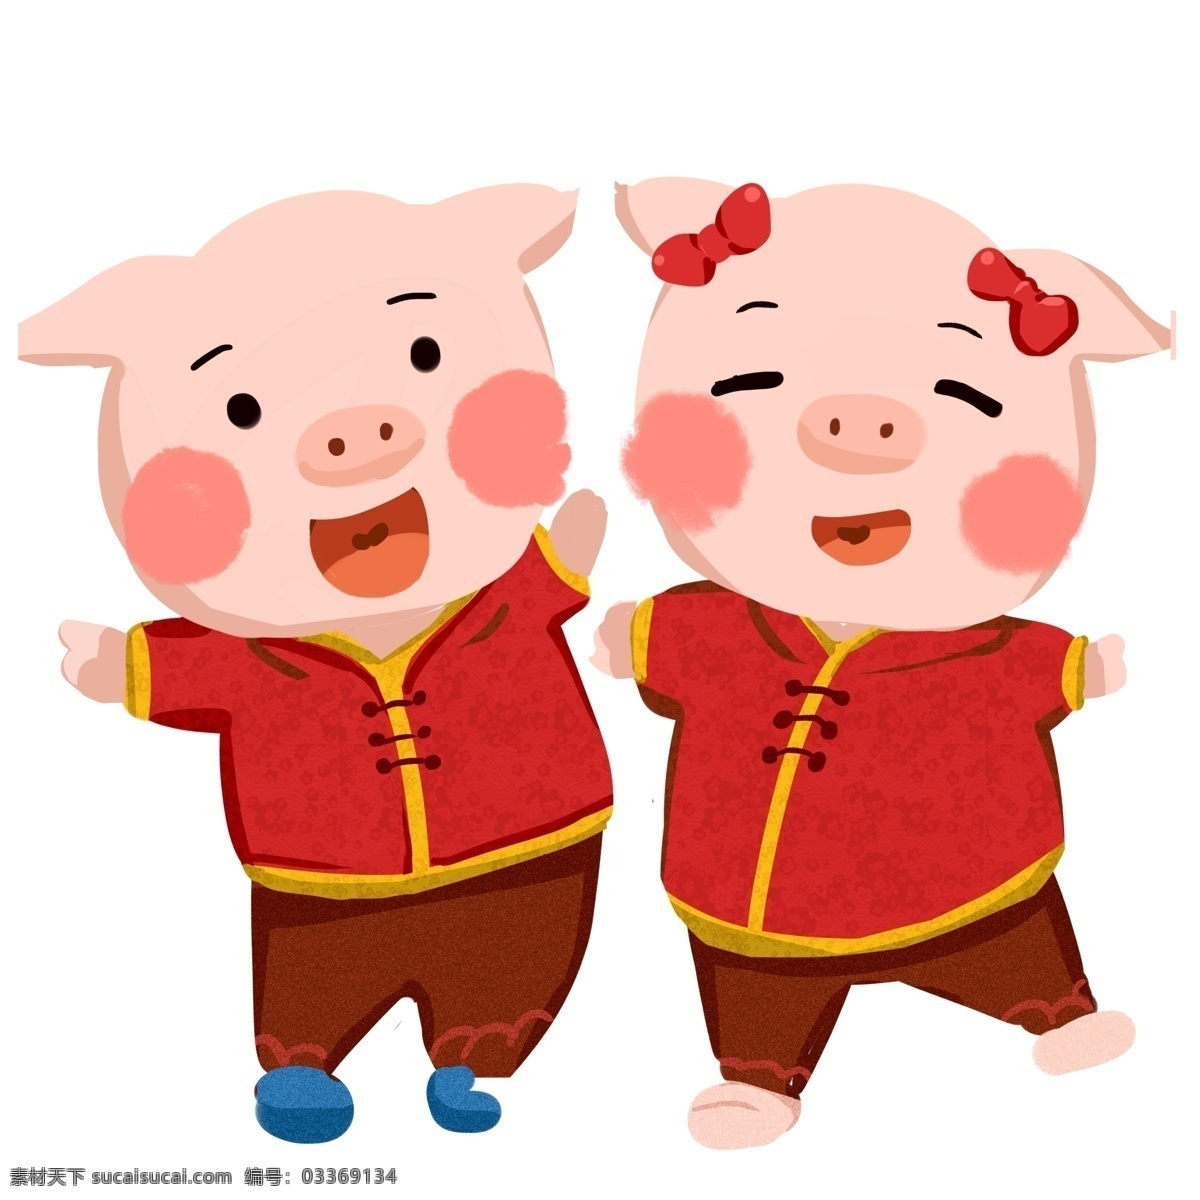 喜庆 欢欢喜喜 新年 猪 兄妹 卡通 可爱 红色 春节 过年 春节元素 2019年 猪年 小猪形象 猪年形象